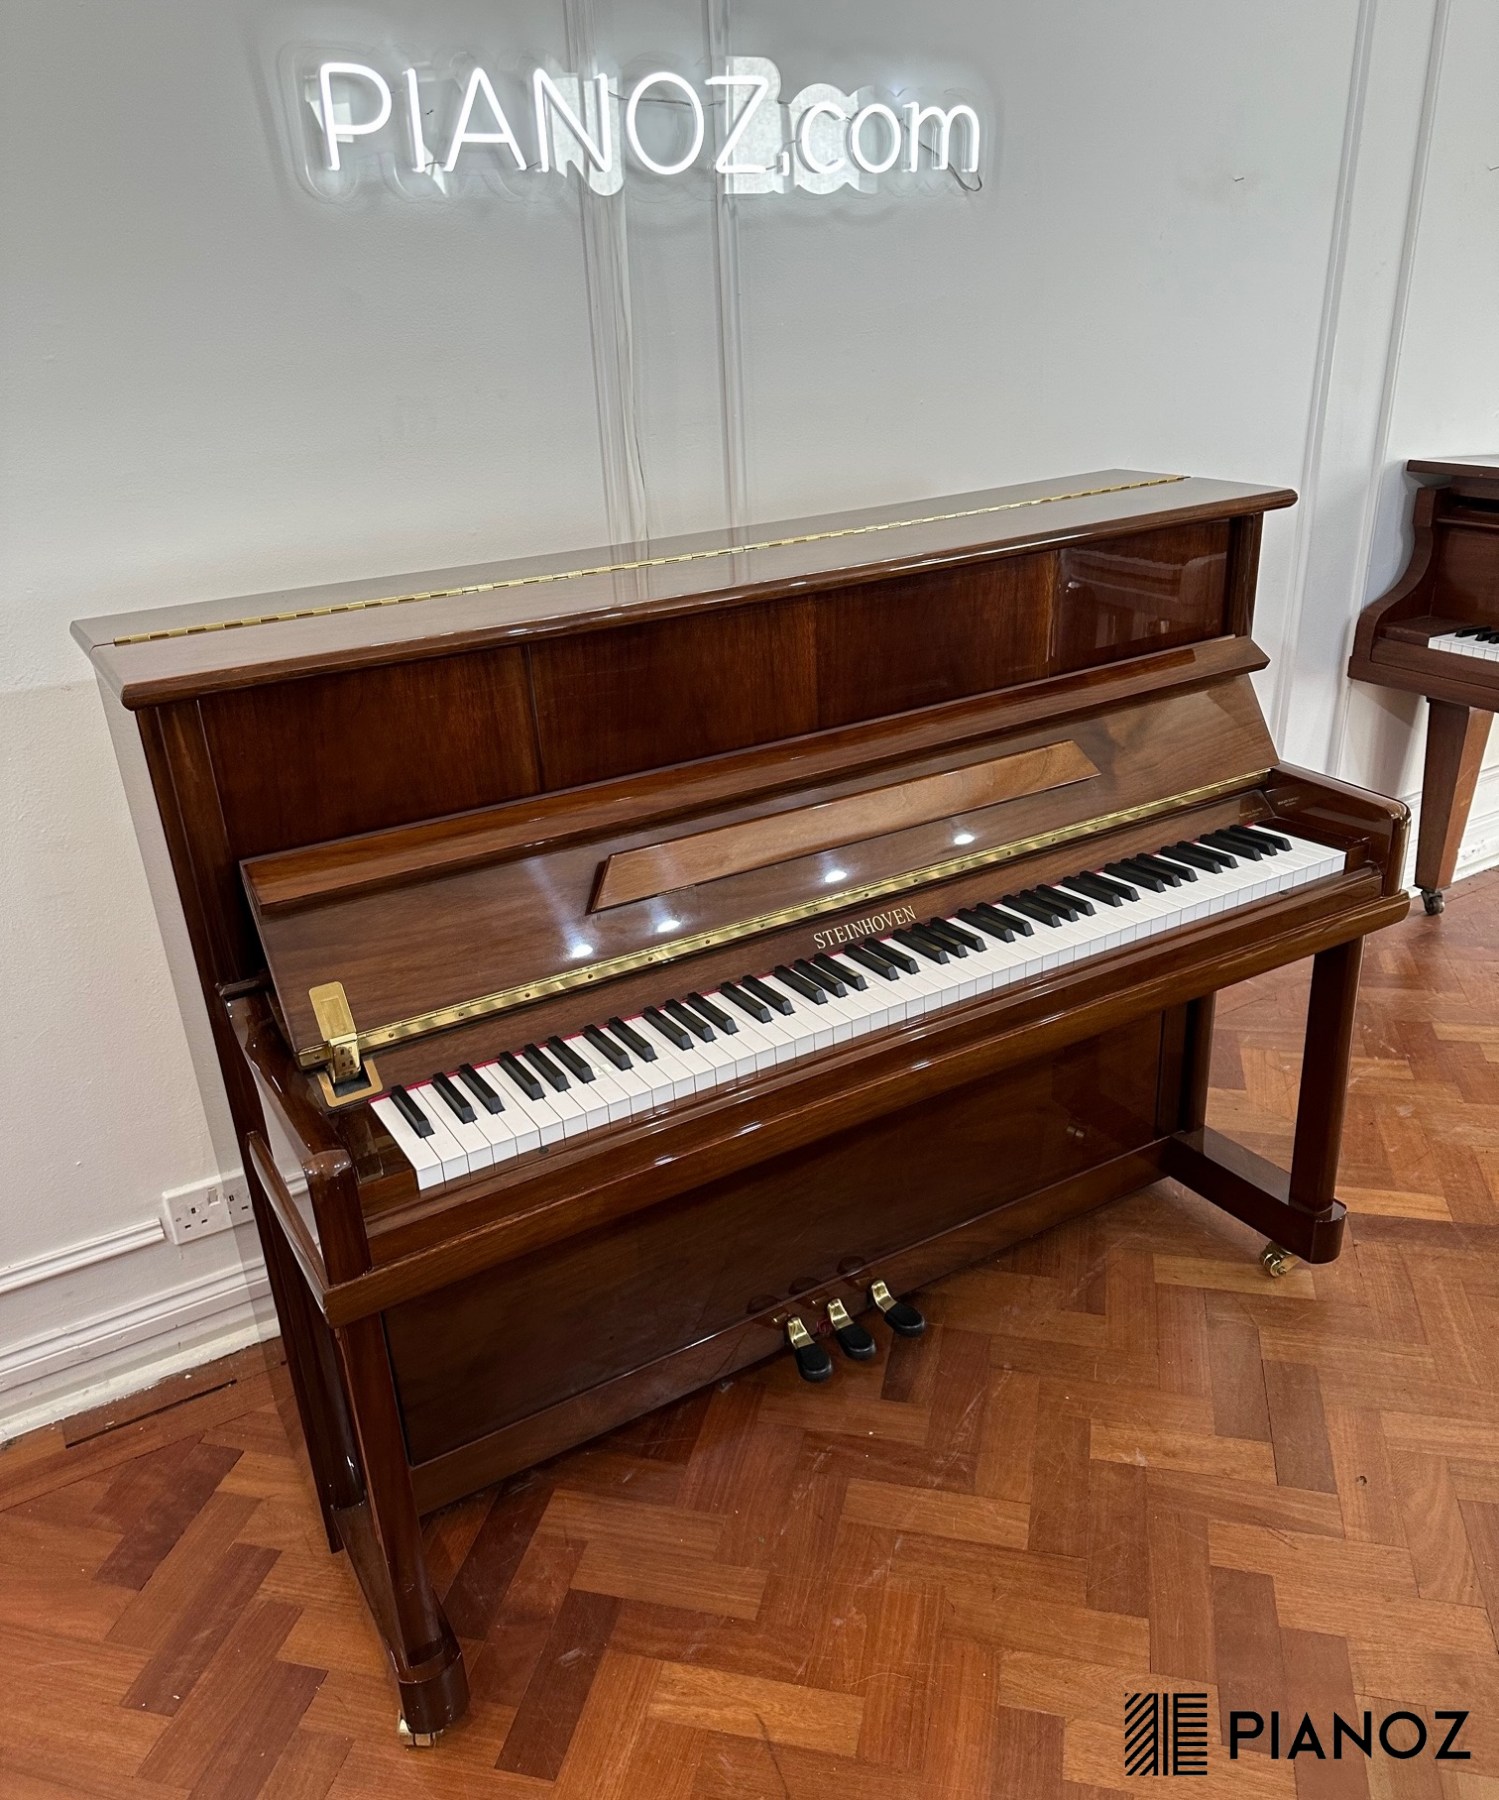 Steinhoven SU112 Upright Piano piano for sale in UK